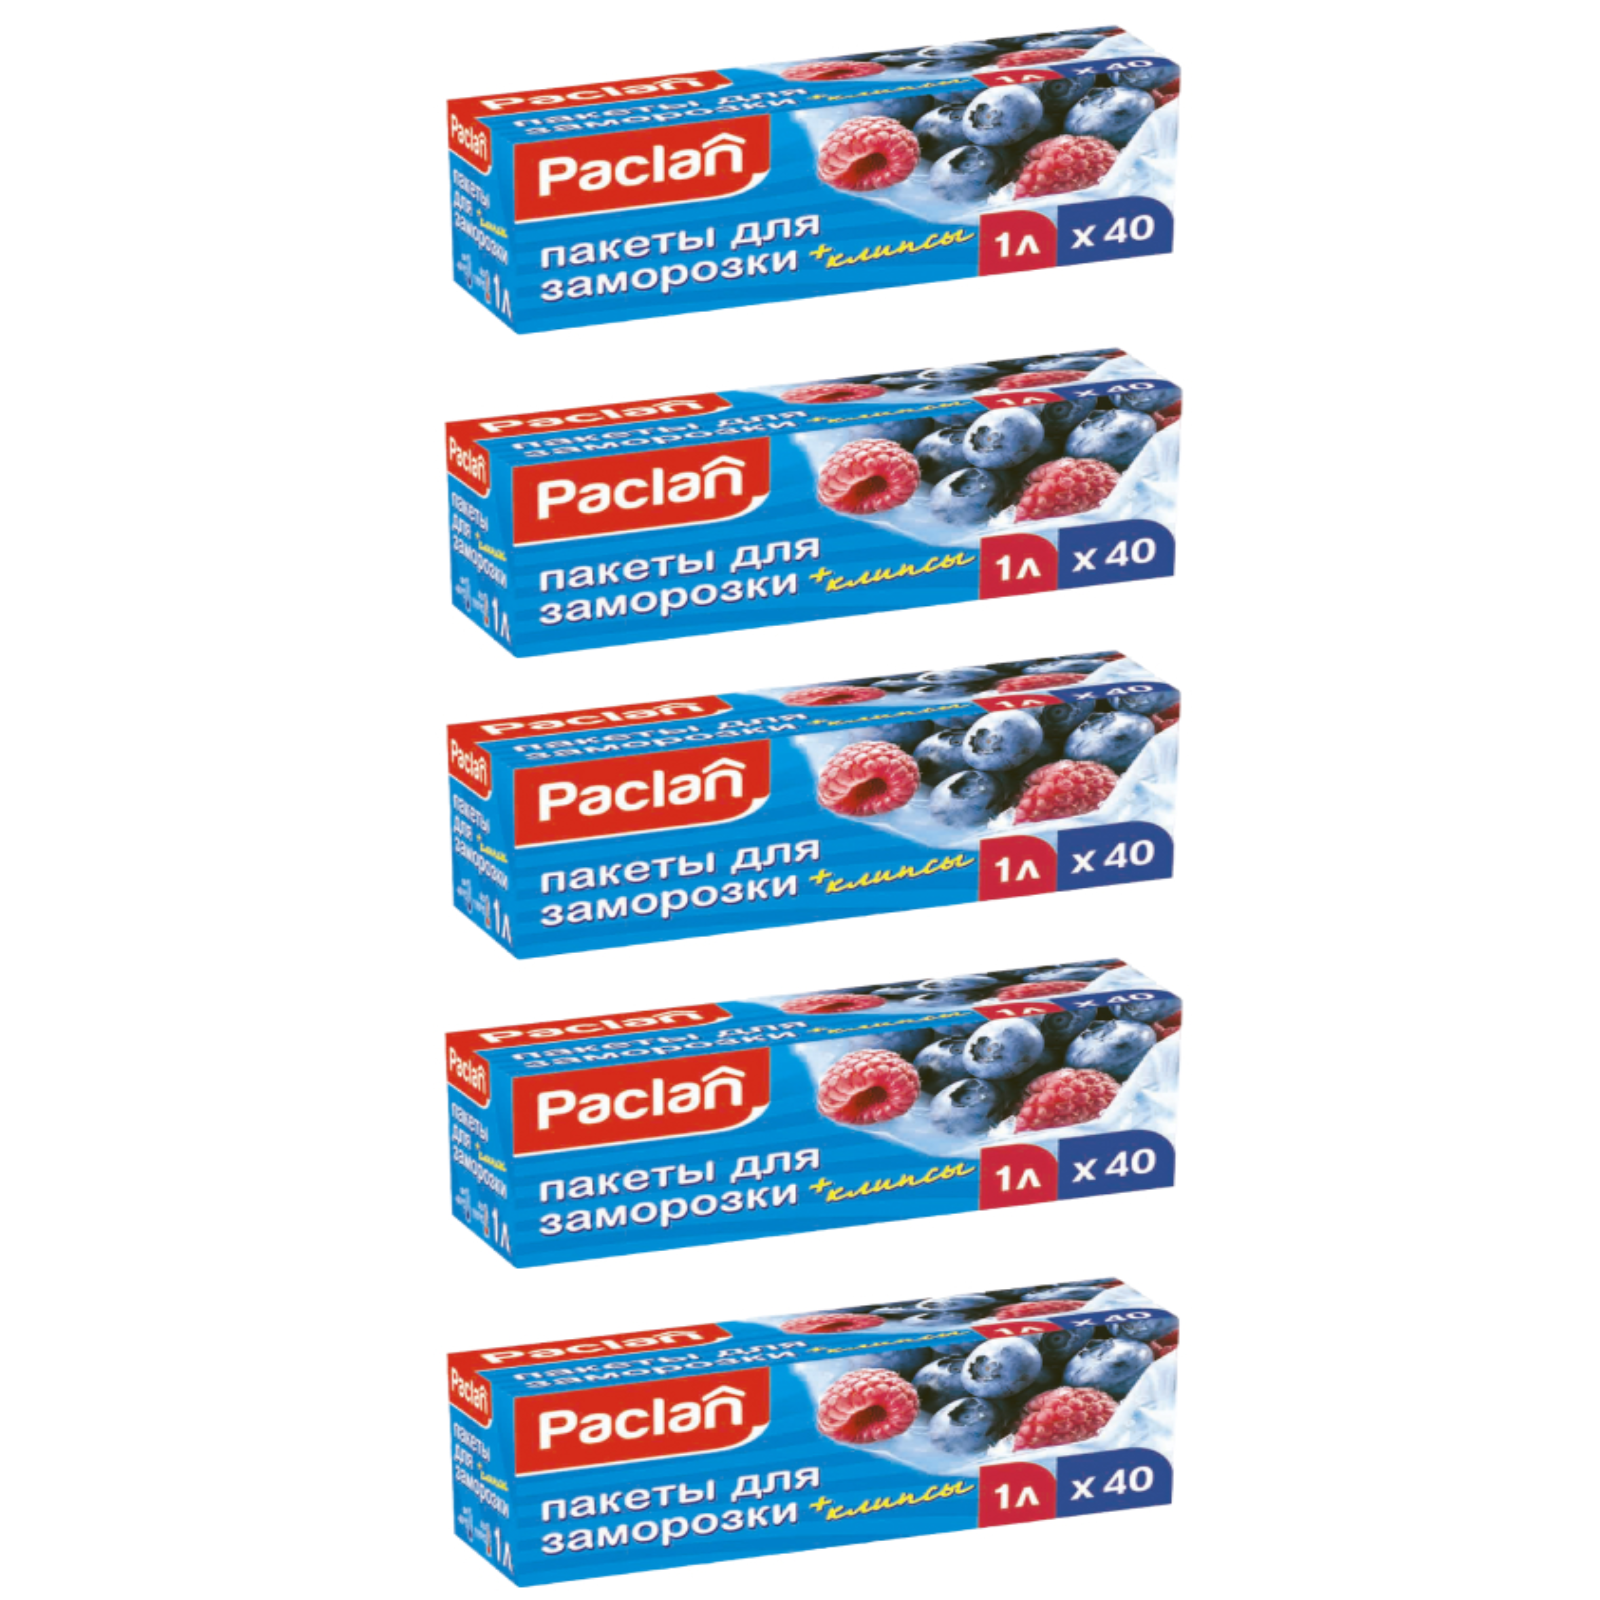 Пакеты для заморозки PACLAN 1 л х 40 шт, 5 упаковок